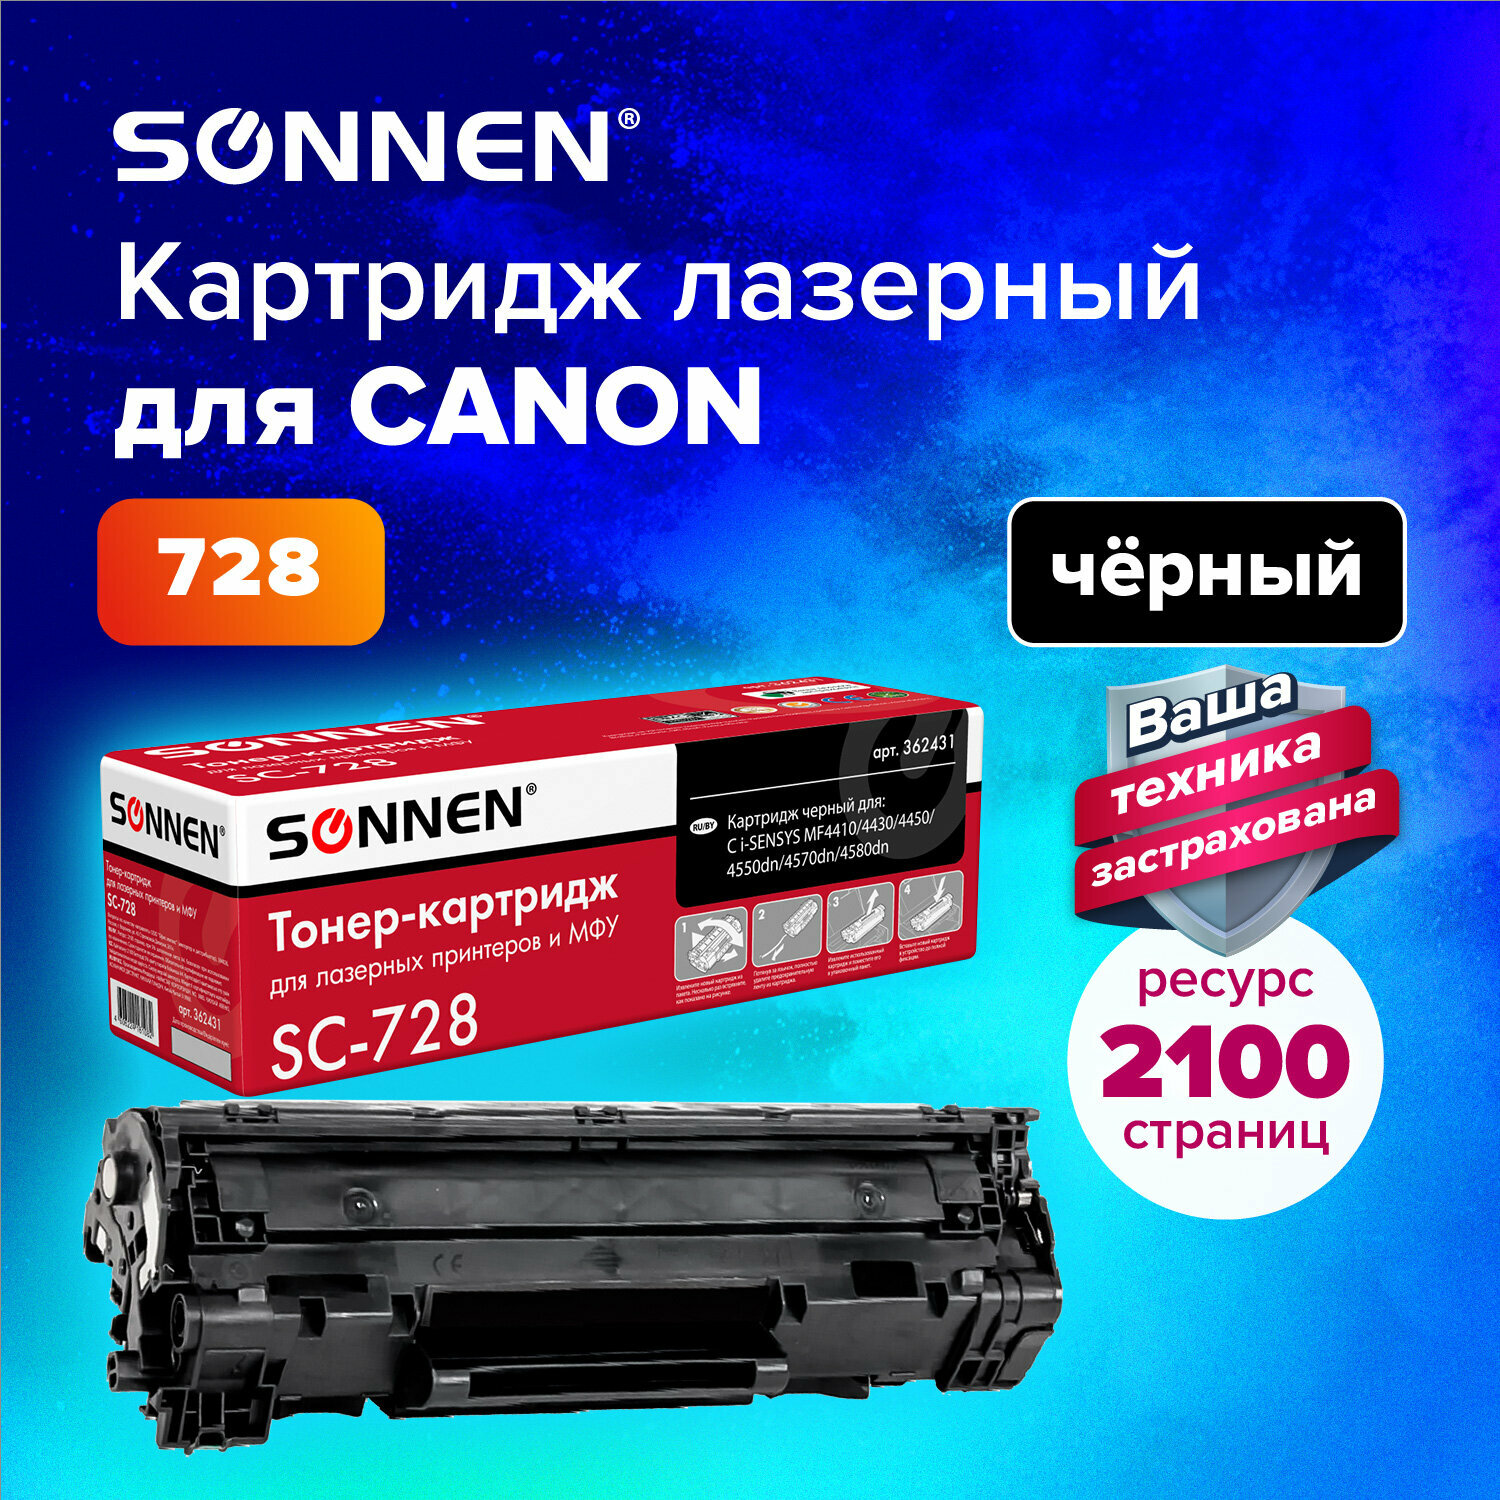 Тонер-картридж для принтера лазерный совместимый Sonnen (SC-728) для Canon Mf4410/4430/4450/4570dn/4580dn, ресурс 2100 страниц, 362431